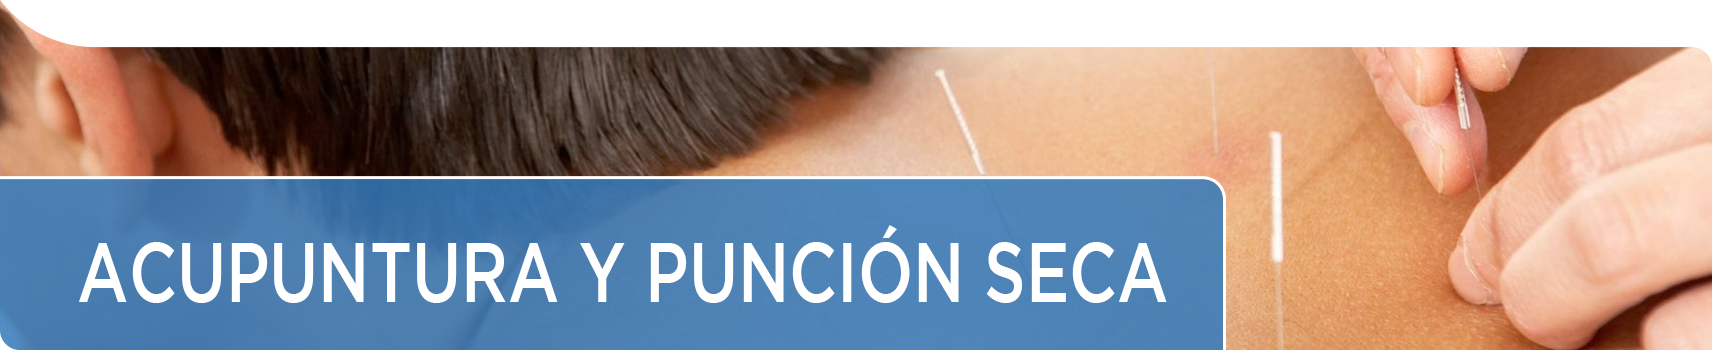 Acupuntura y Punción Seca | Comprar agujas para acupuntura